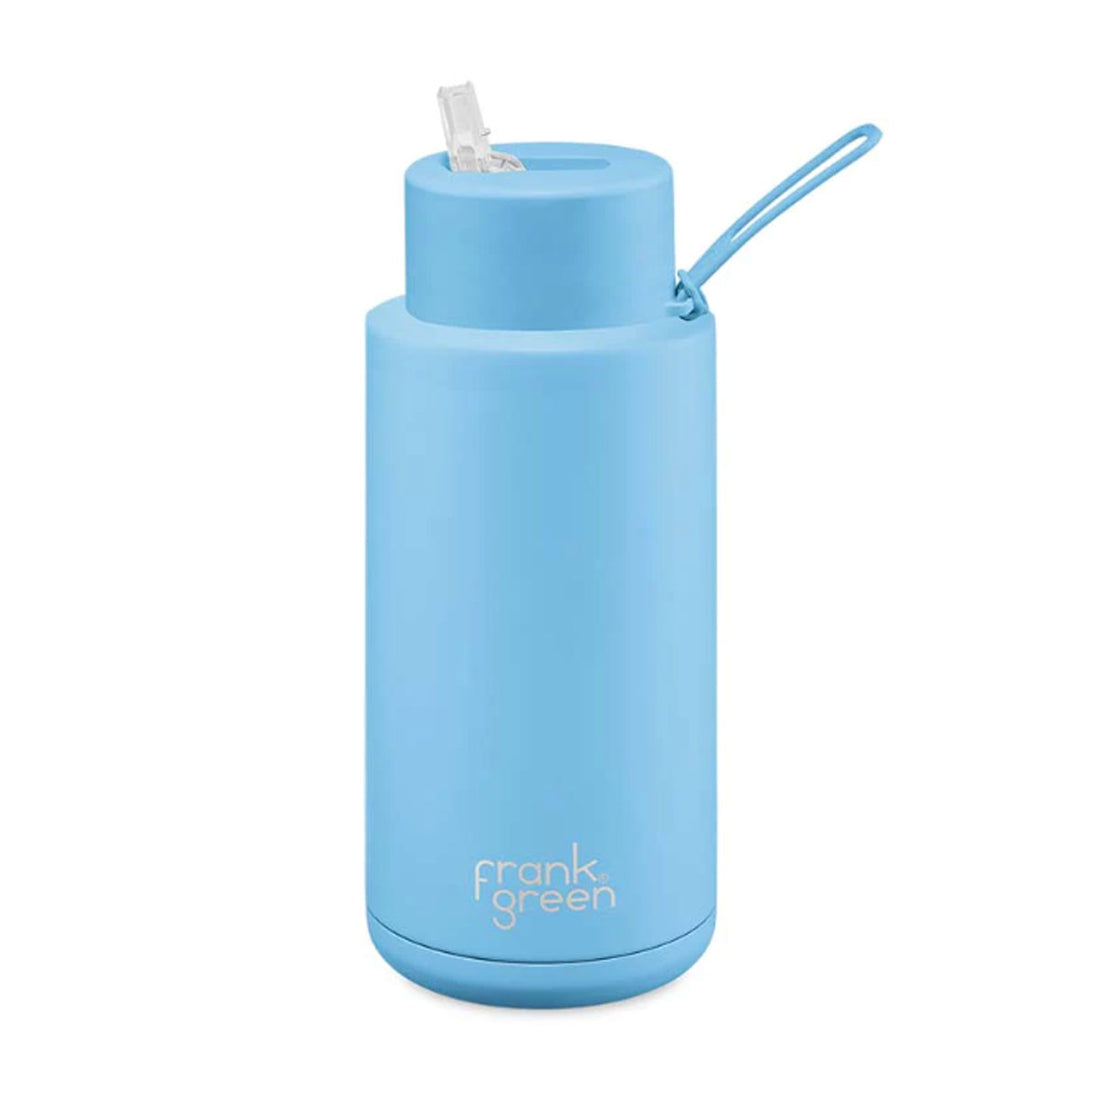 Frank Green 34oz/1005ml Ceramic Reusable Bottle - Sky Blue